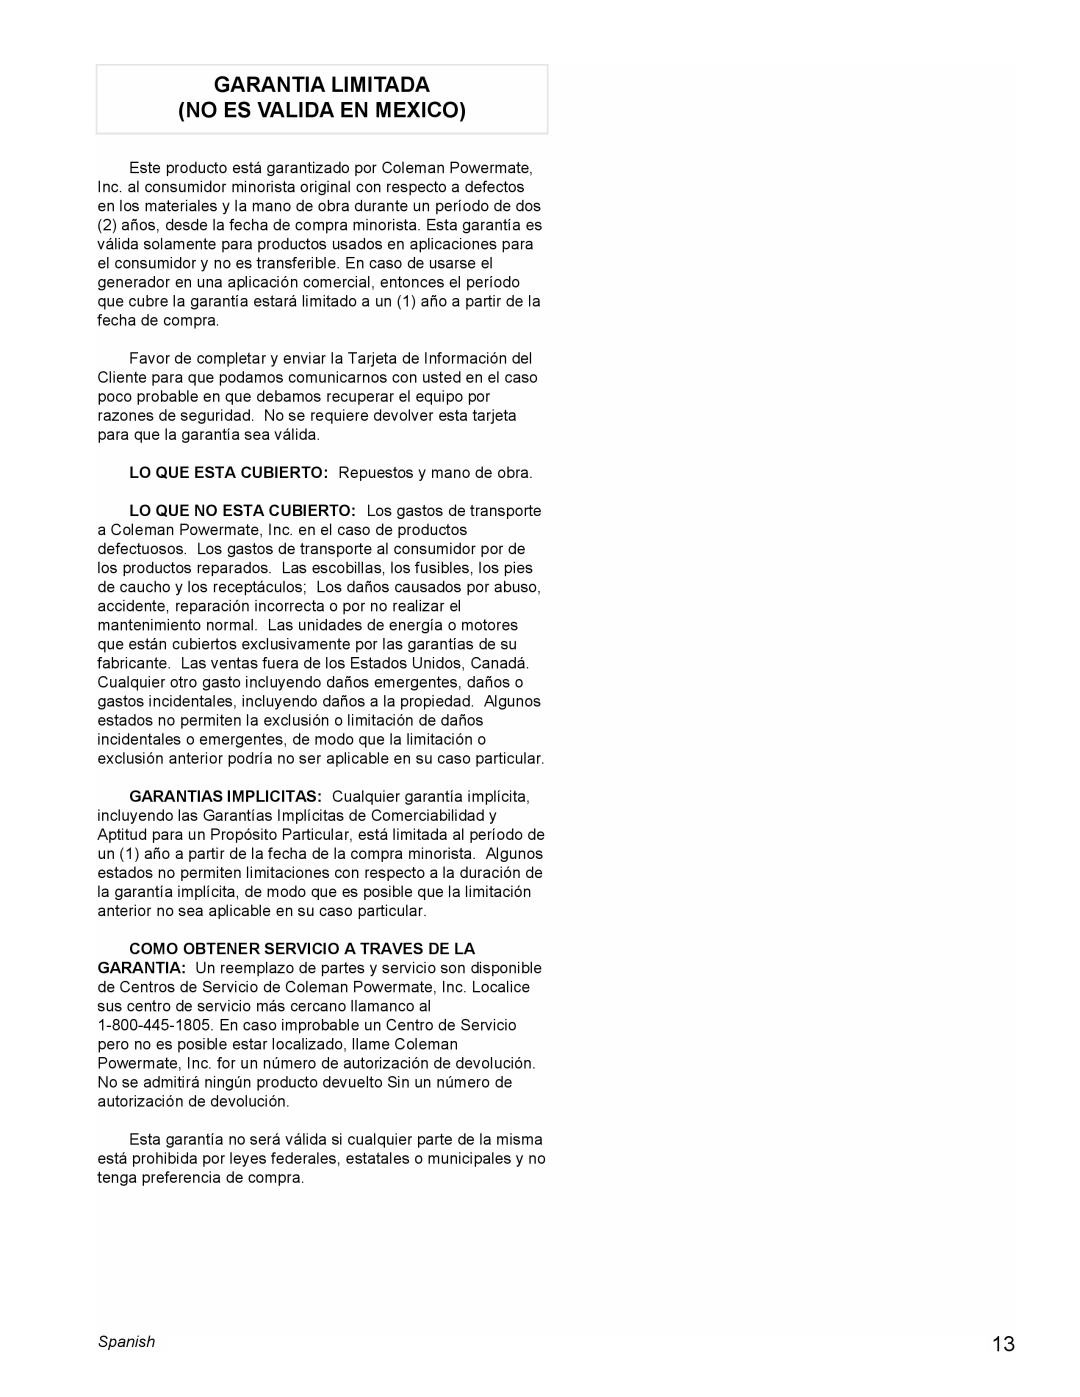 Coleman PM0601100 manual Garantia Limitada No Es Valida En Mexico, Spanish 